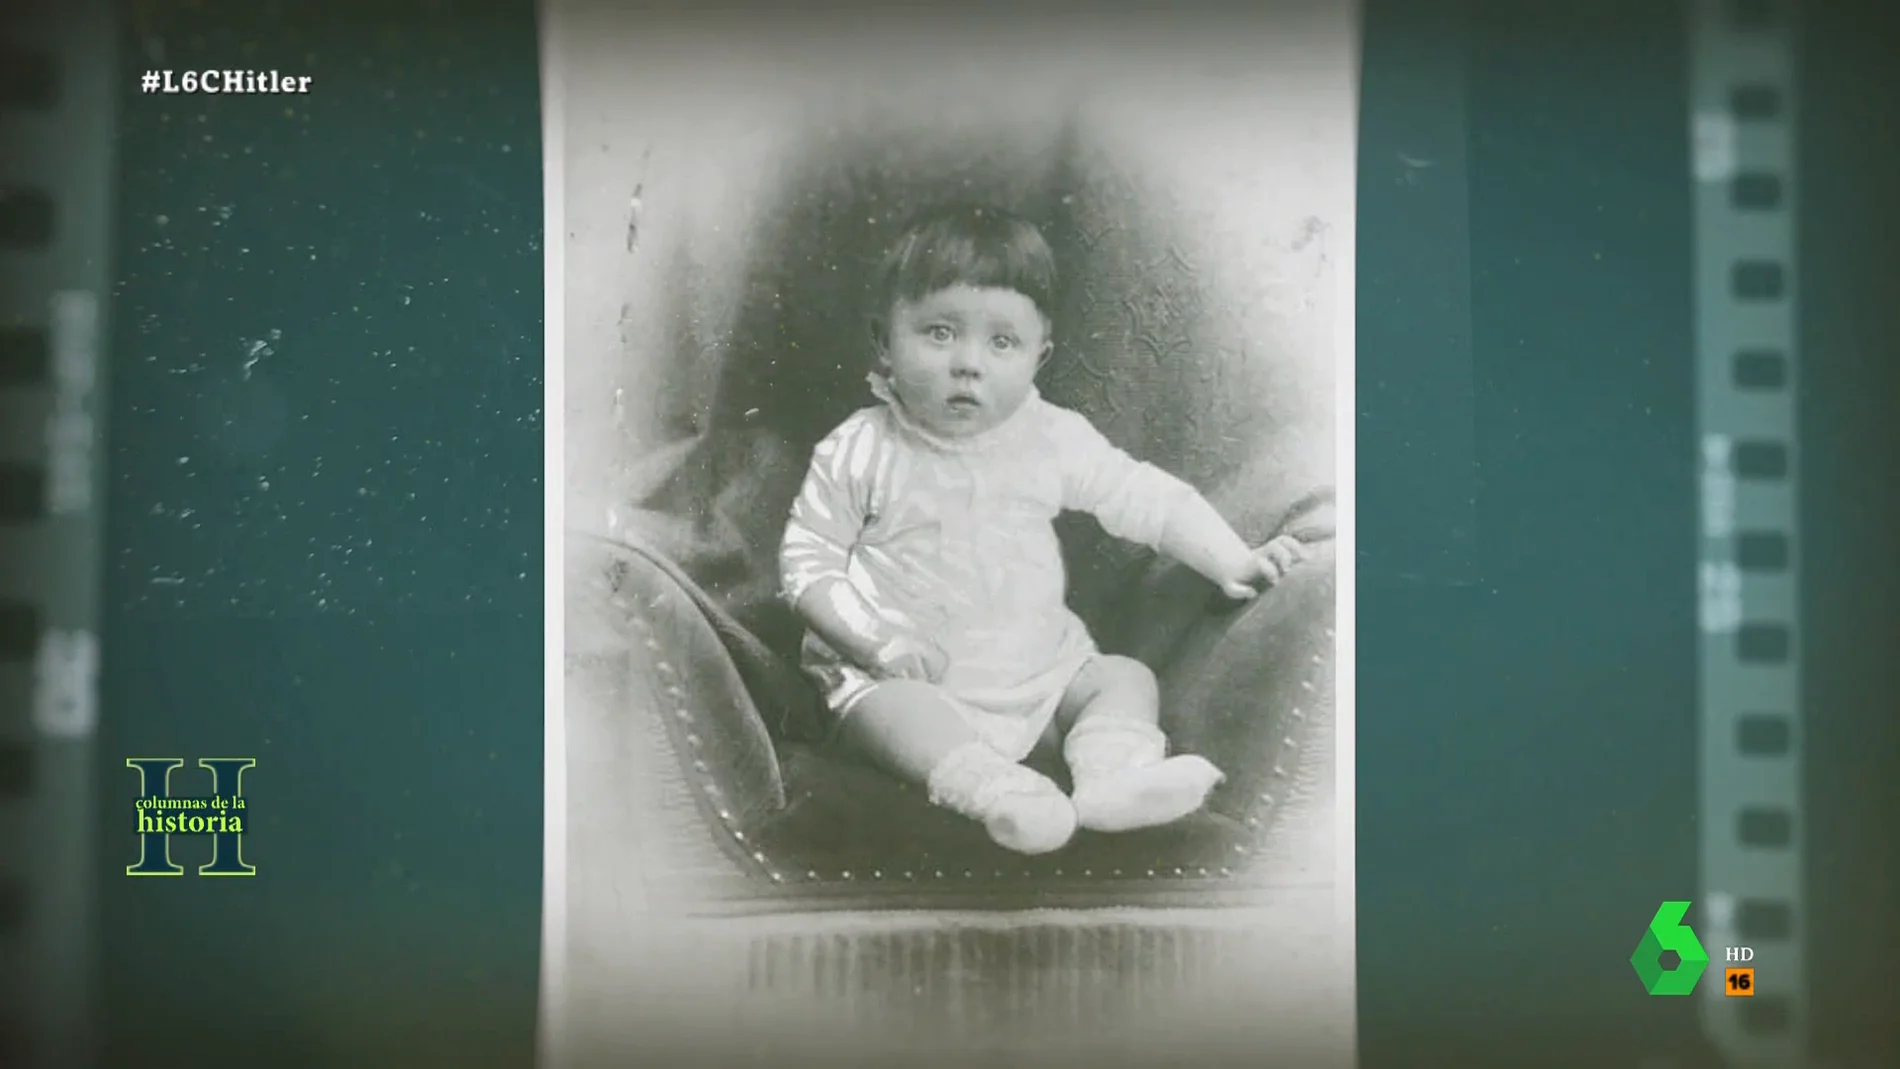 Acostumbrado al rechazo desde su infancia y a las palizas de su padre: así fueron los primeros años de Hitler